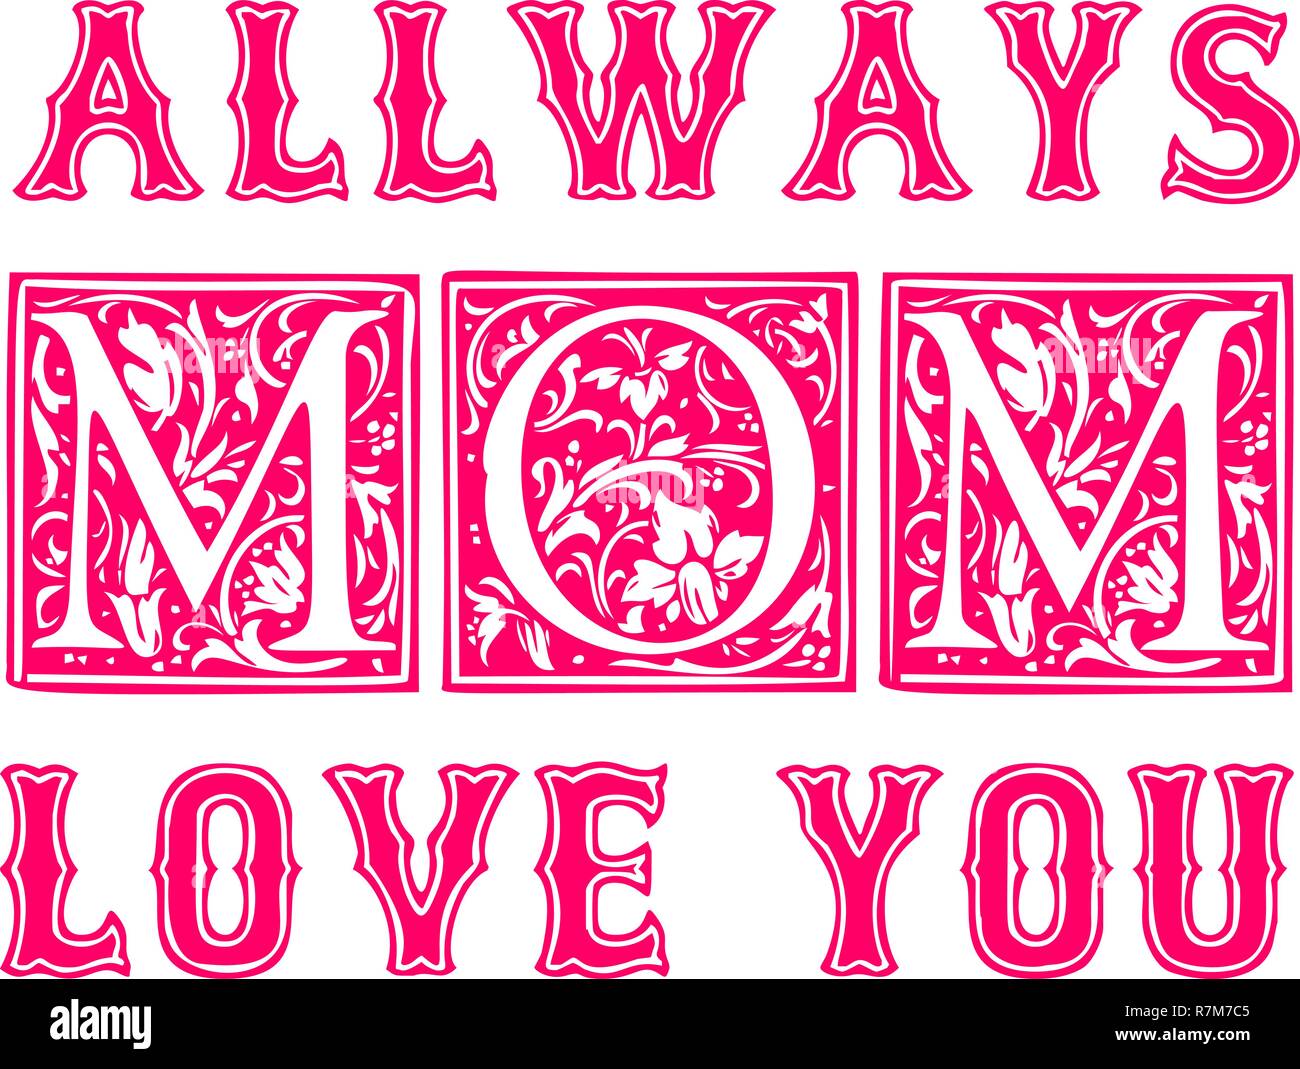 Toujours aime maman design typographique pour des cartes, affiches, étiquettes, tags, t-shirt print Illustration de Vecteur